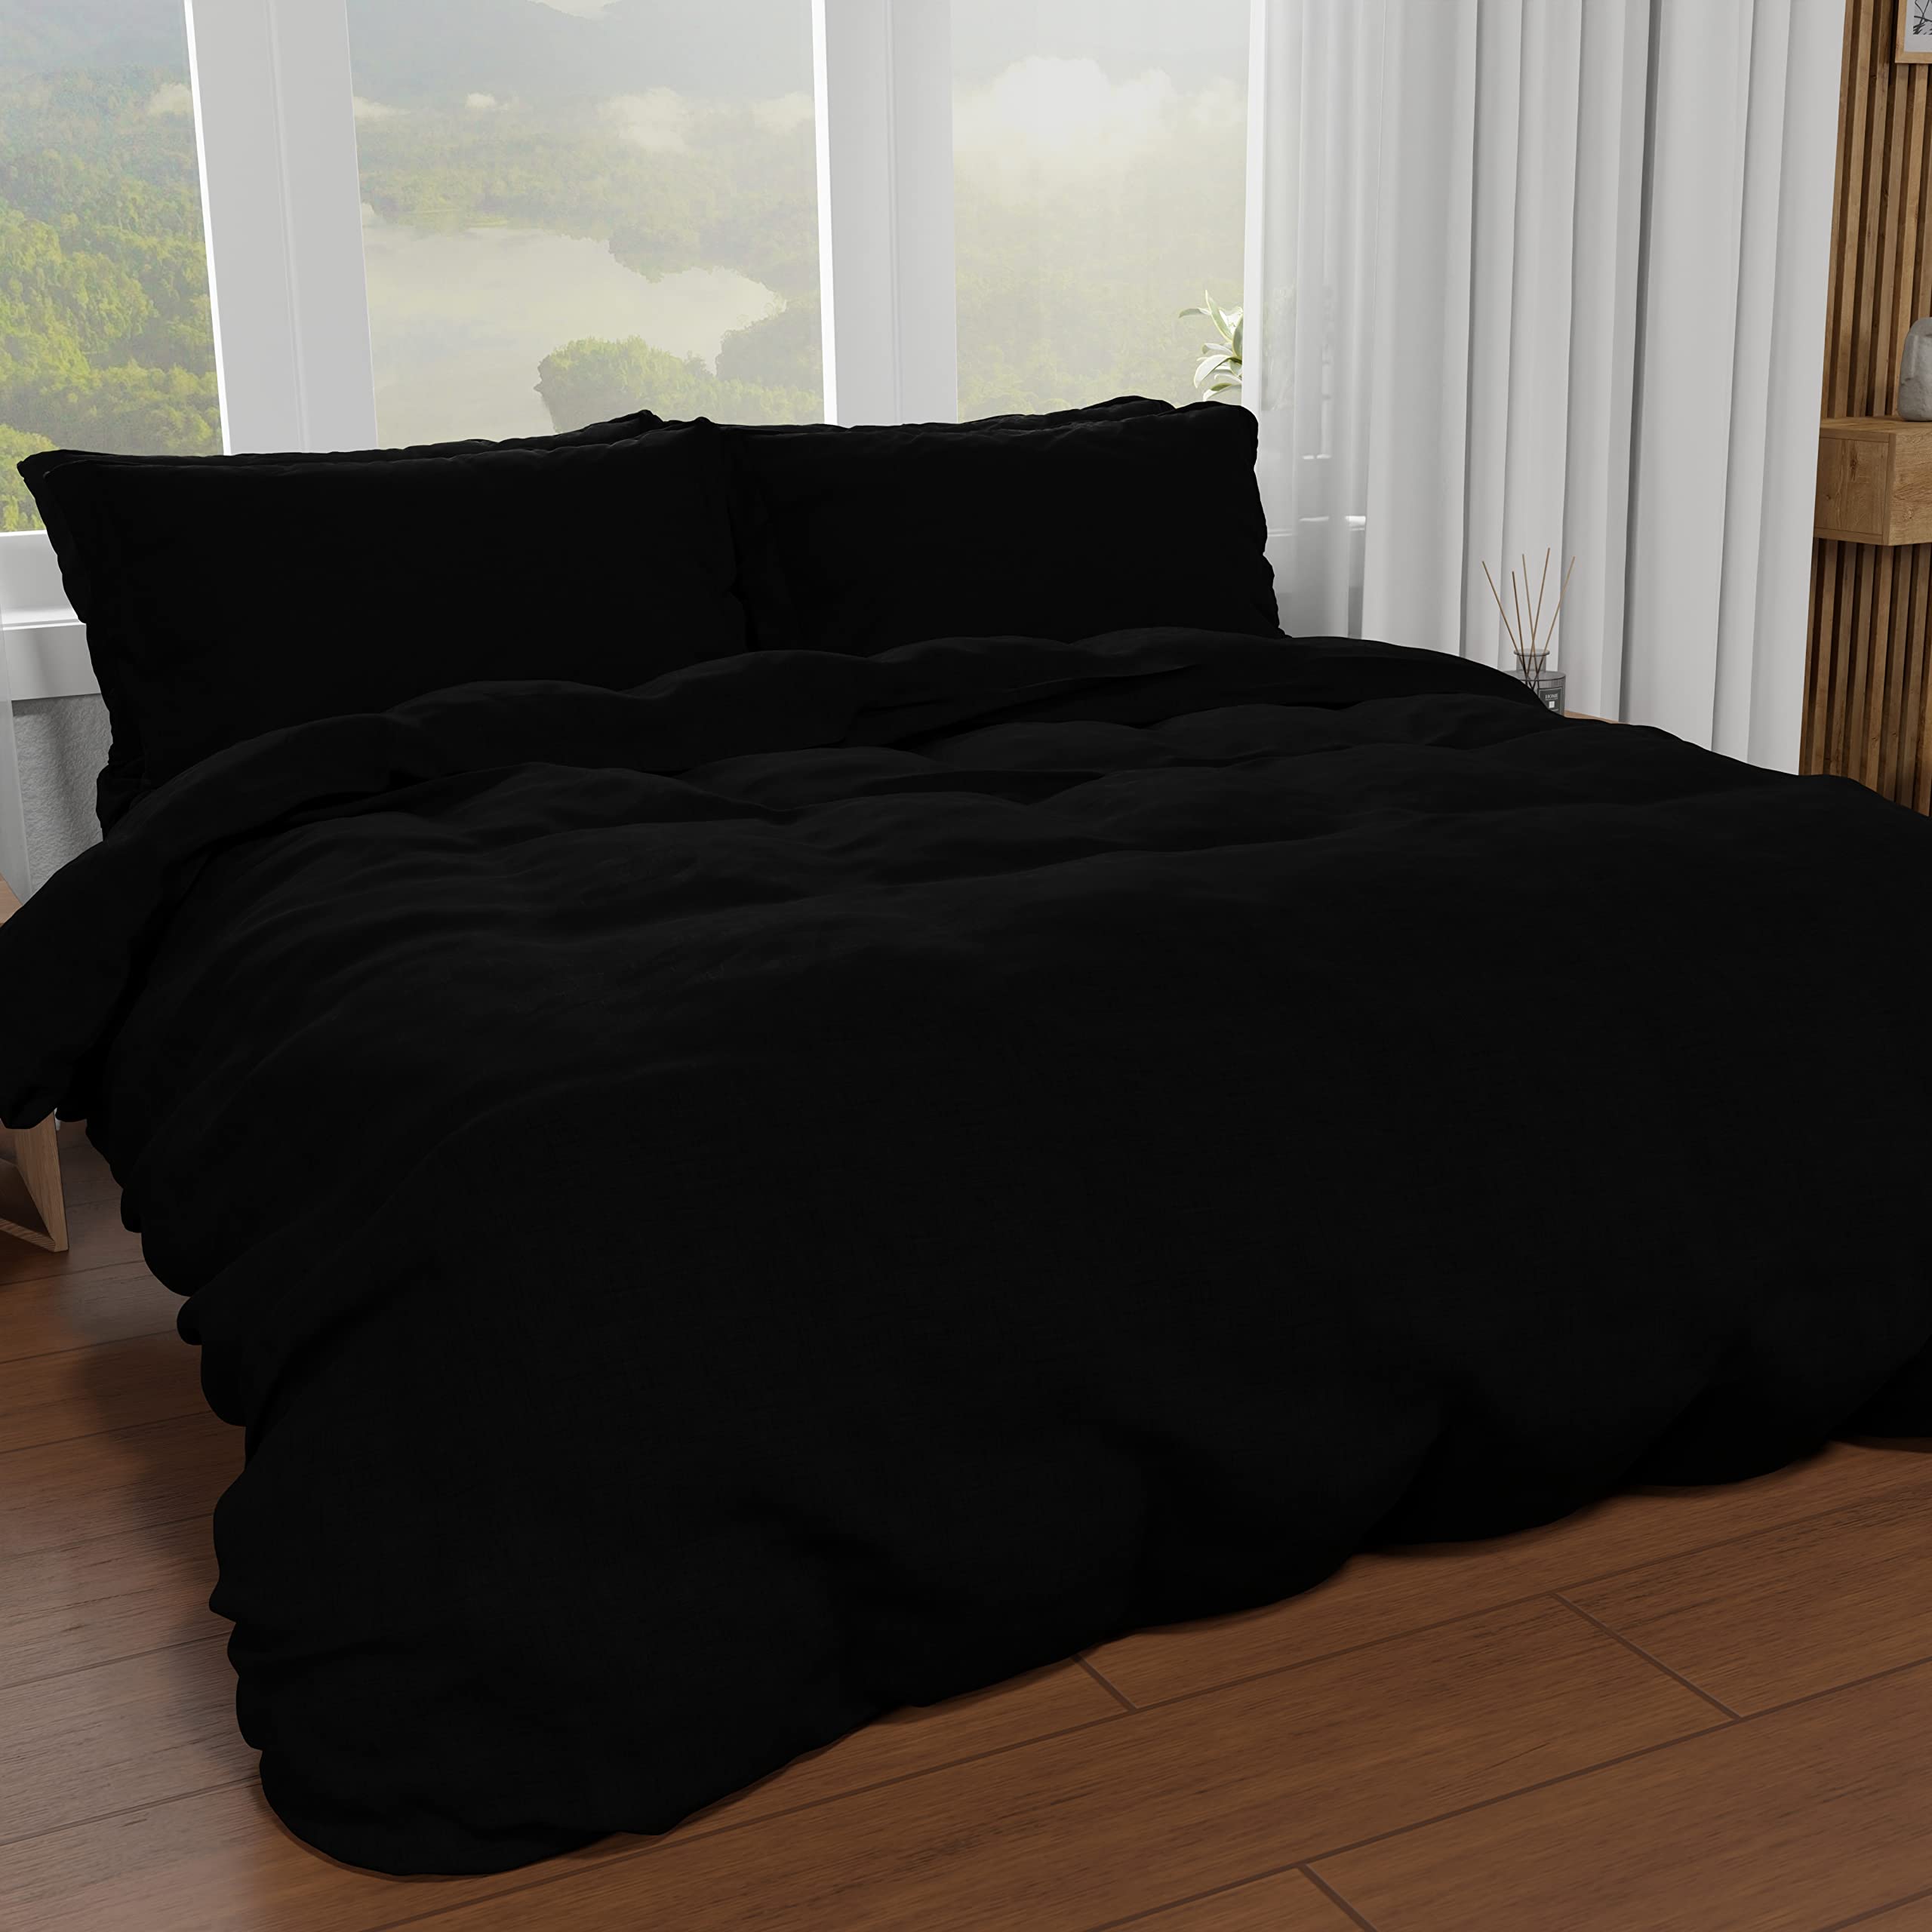 PETTI Artigiani Italiani - Bettbezug für Einzelbett, Bettbezug und Kissenbezüge aus Mikrofaser, einfarbig schwarz, 100% Made in Italy